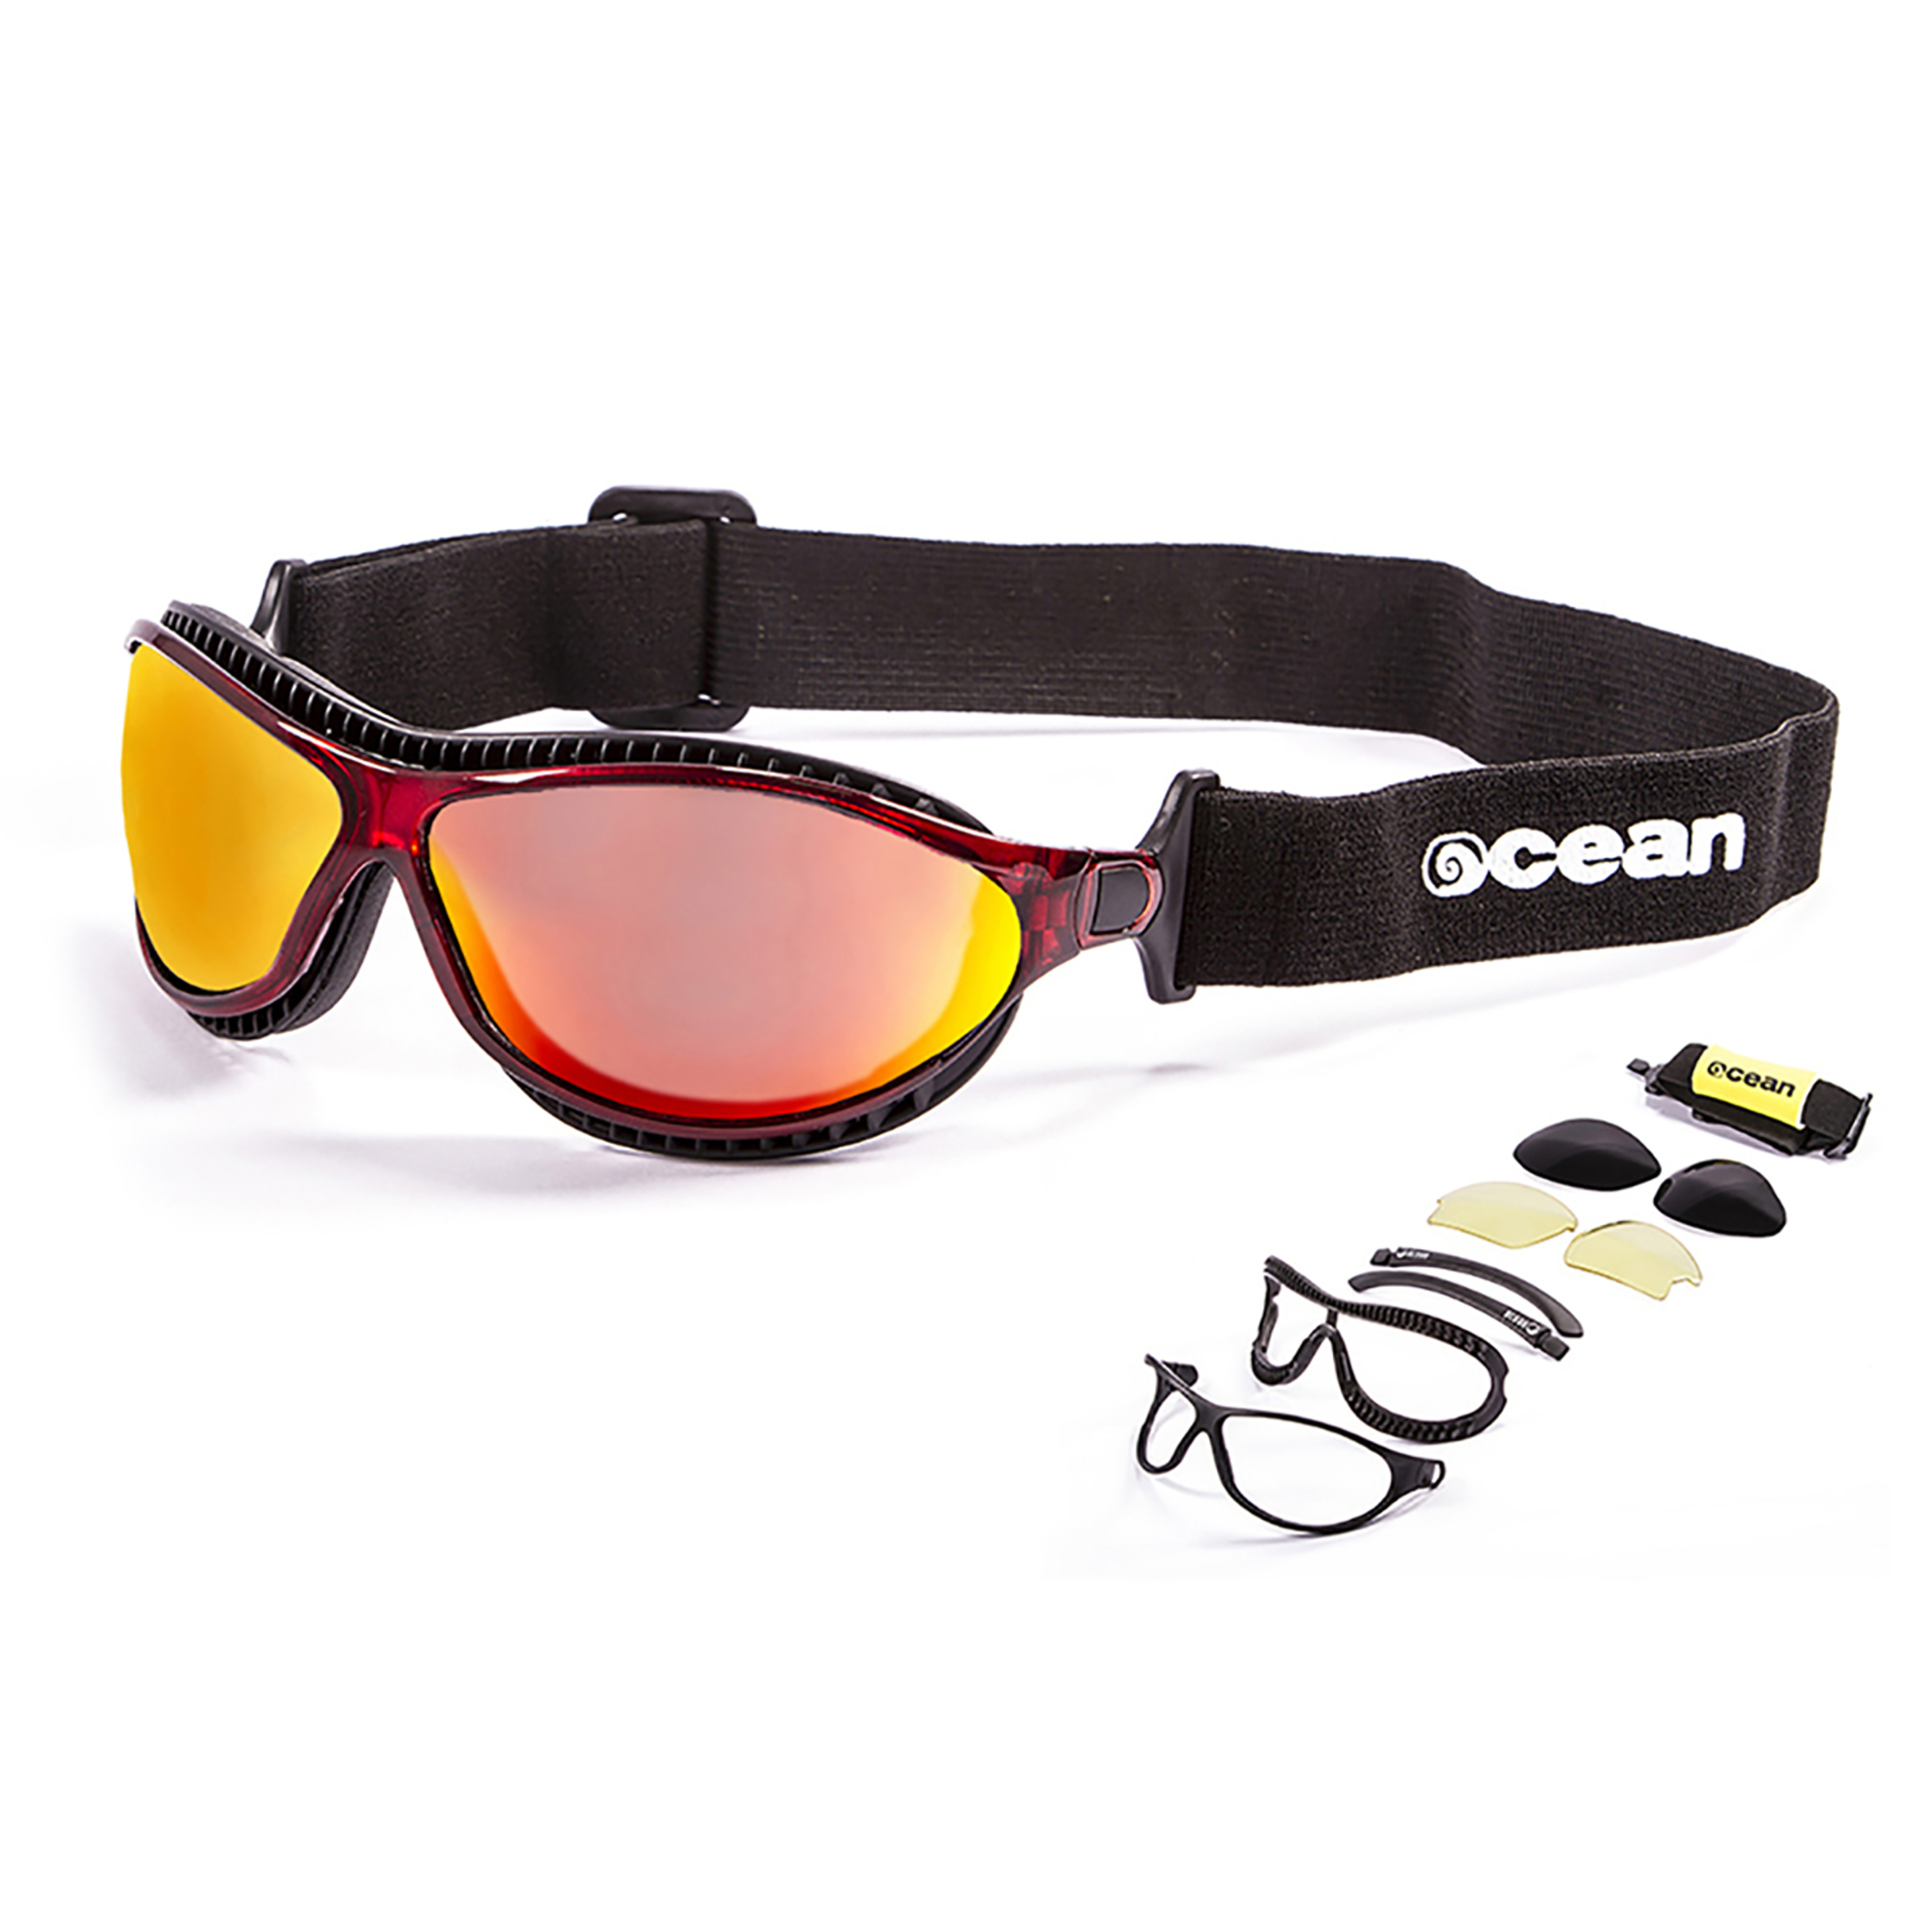 Gafas De Sol Técnicas Para La Práctica De Deportes De Agua Tierra De Fuego Ocean Sunglasses - Rojo  MKP